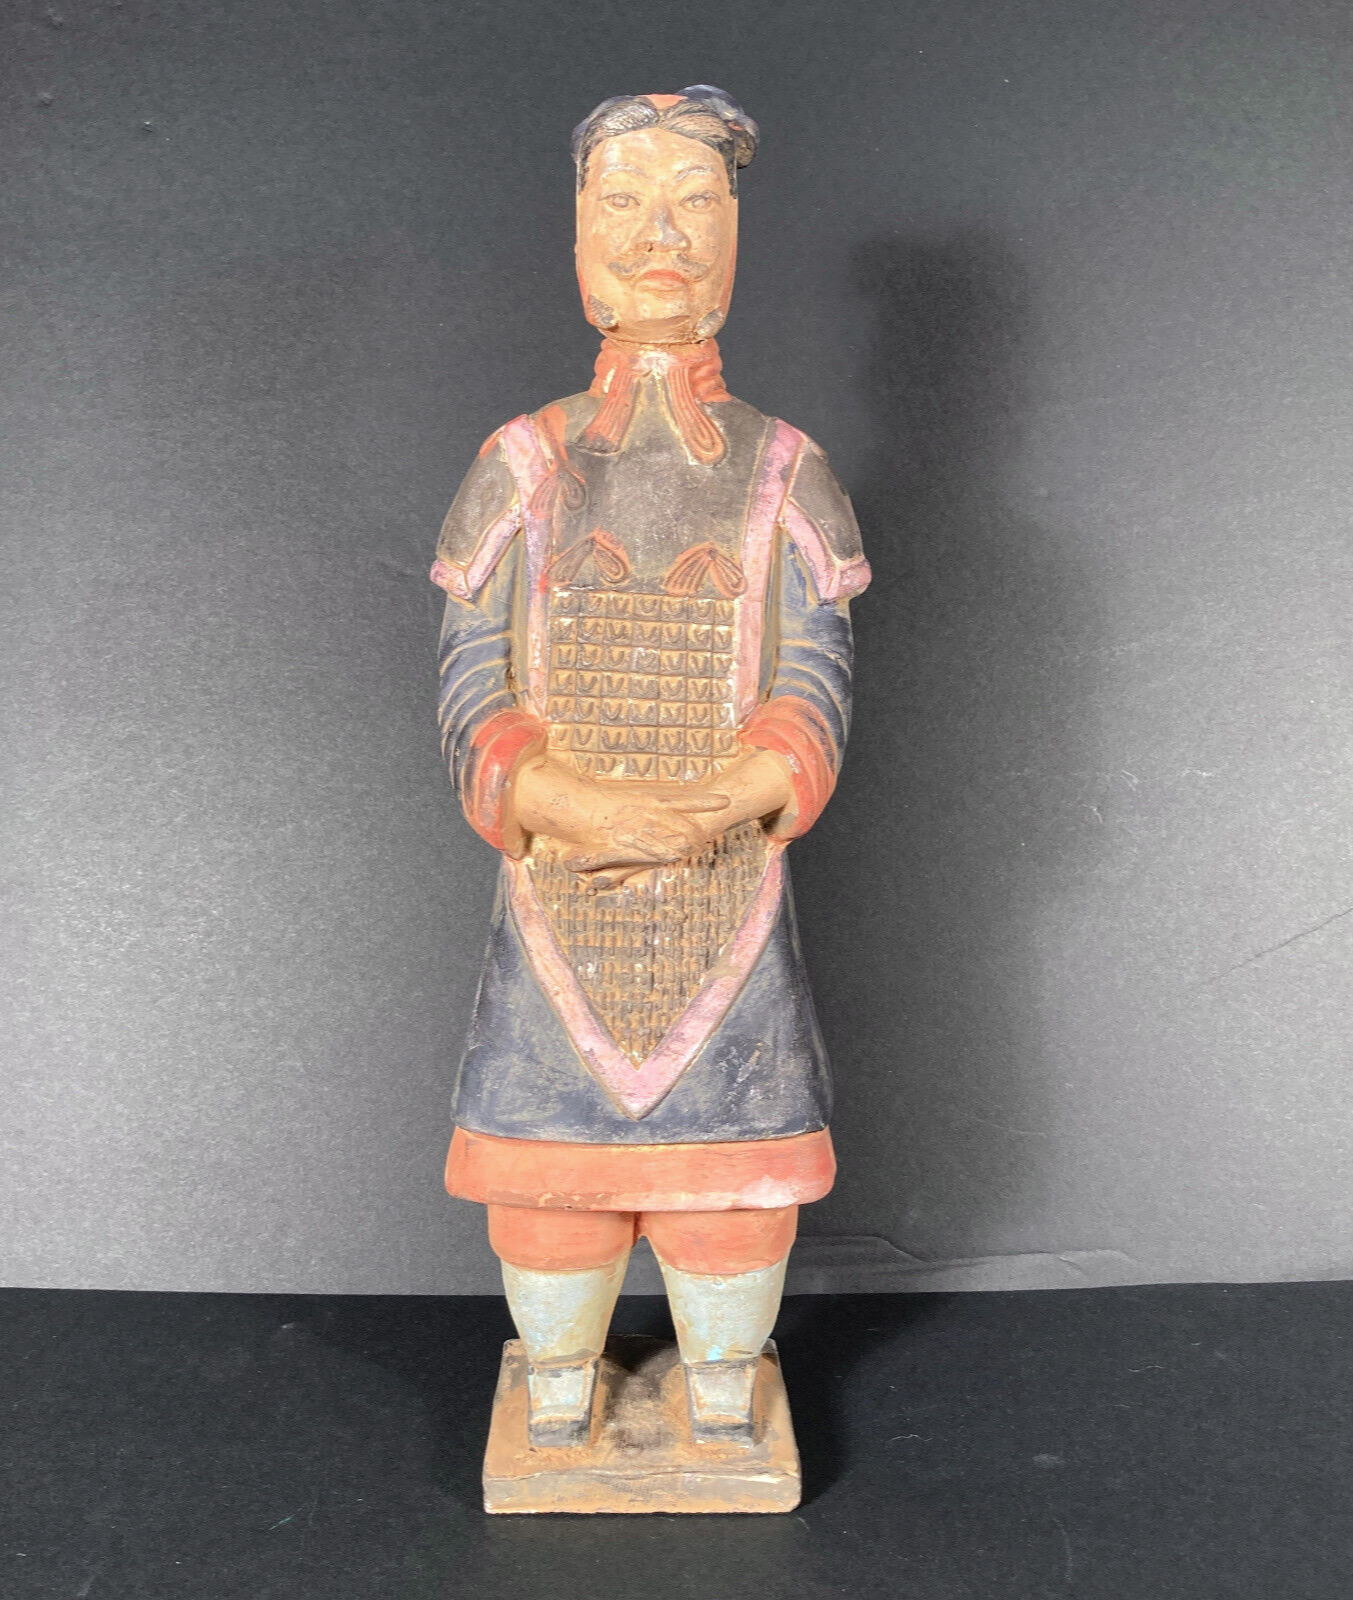 XIAN Chinese Terra Cotta Warrior Emperor Qin Shi Huang Polychrome China 14 INCH